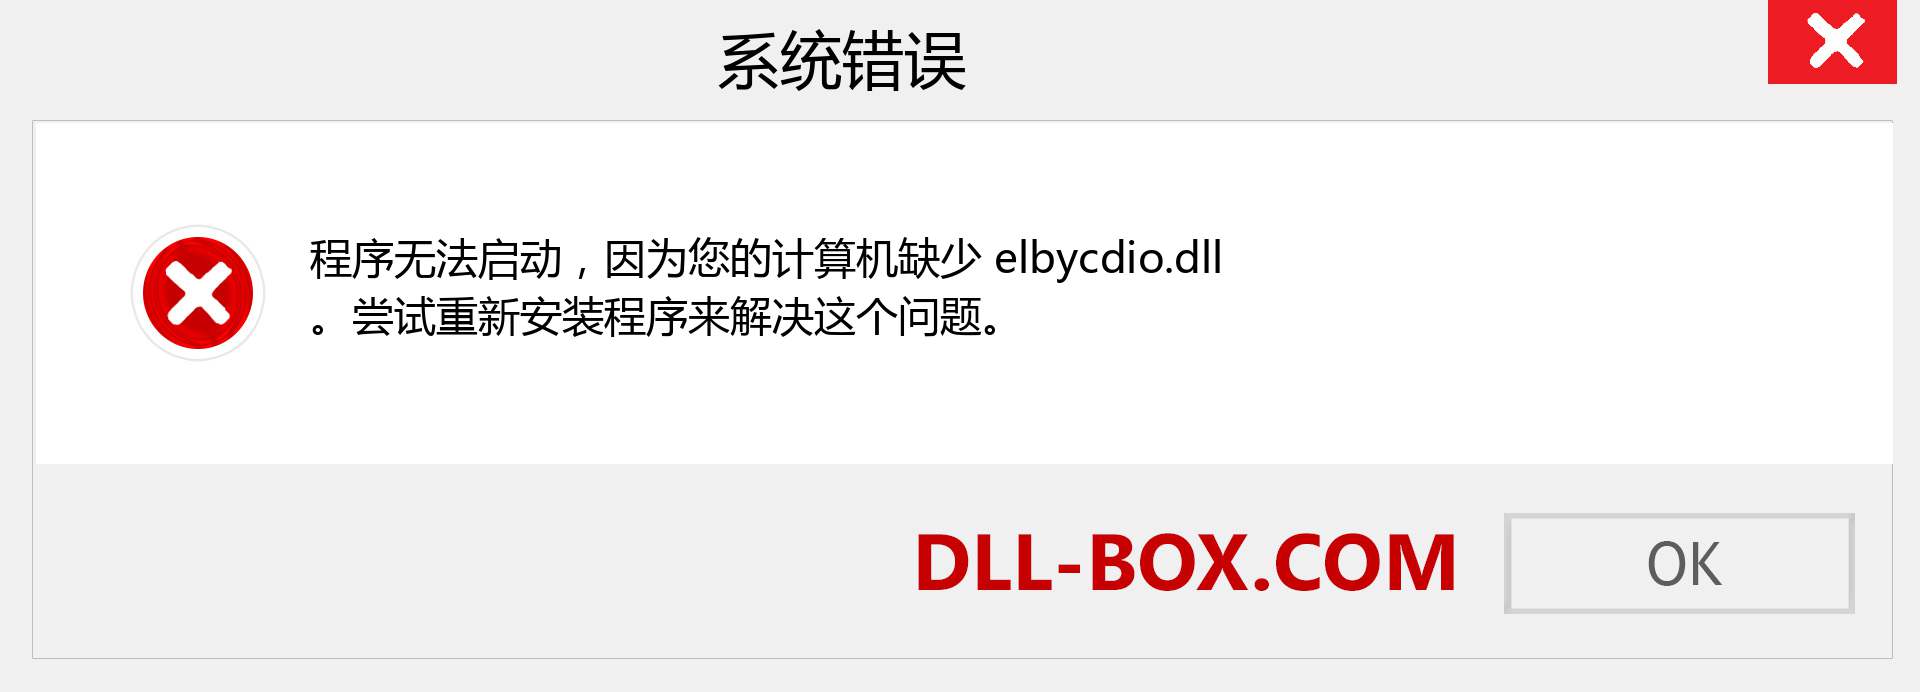 elbycdio.dll 文件丢失？。 适用于 Windows 7、8、10 的下载 - 修复 Windows、照片、图像上的 elbycdio dll 丢失错误